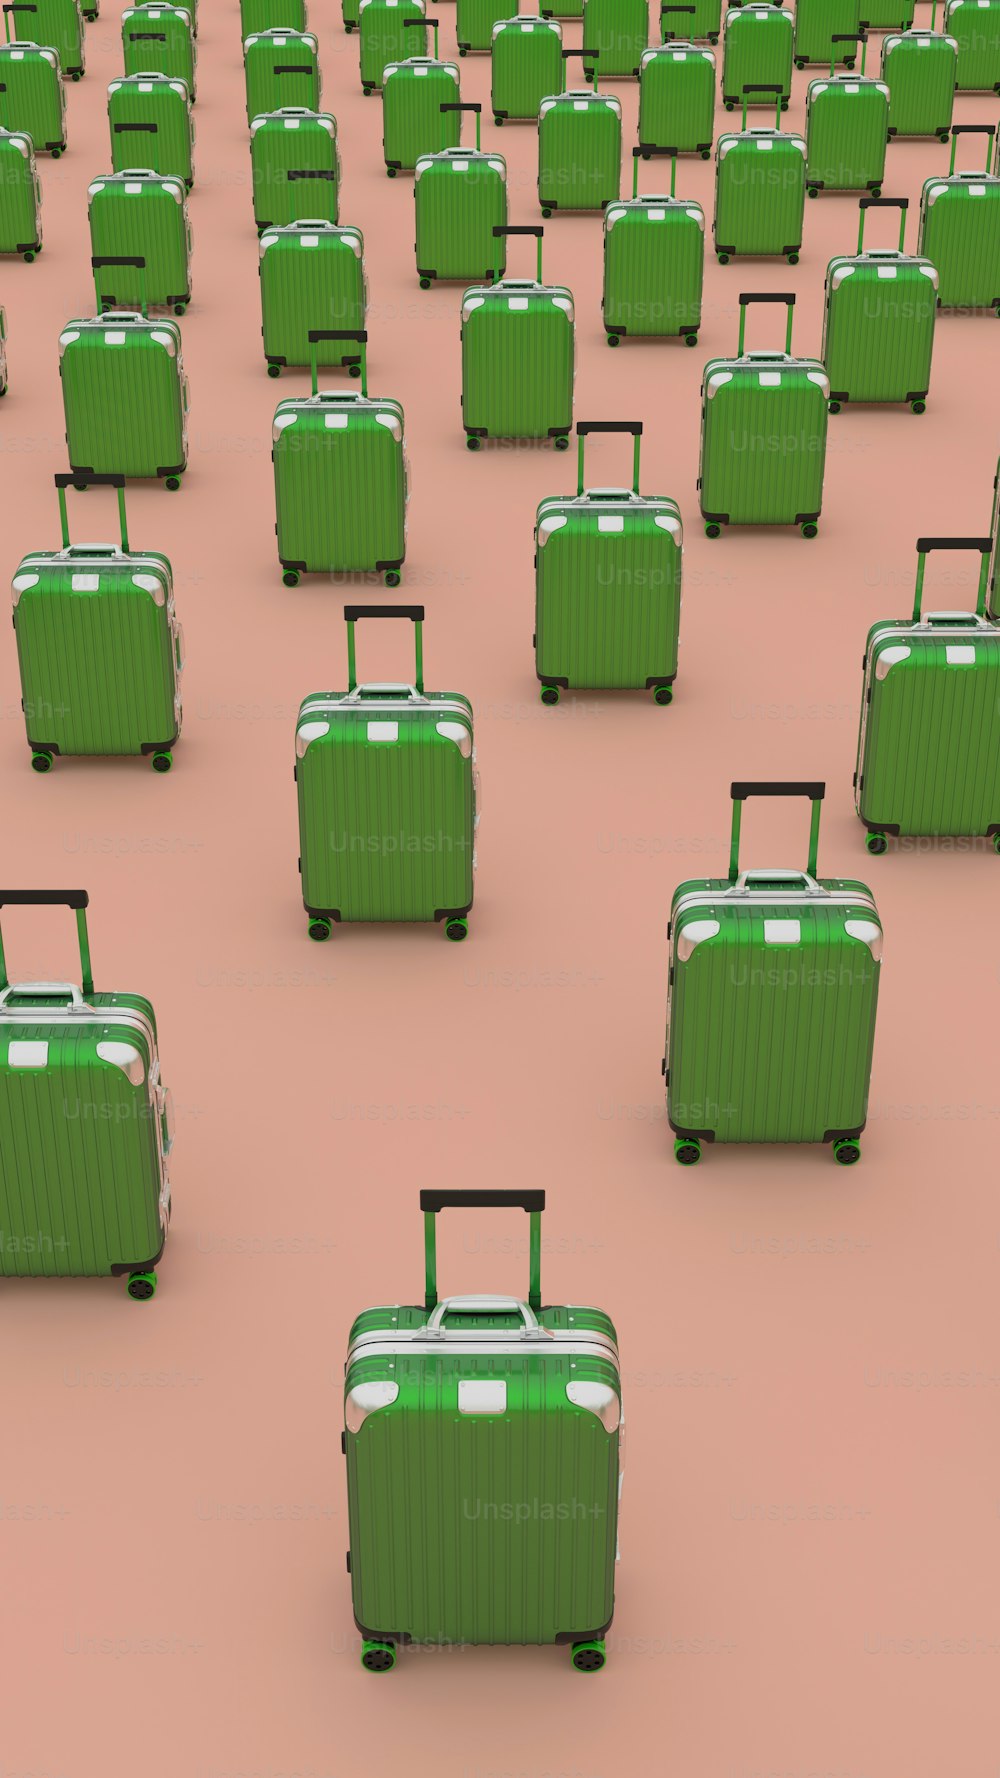 un gruppo di valigie verdi sedute in cima a un pavimento rosa